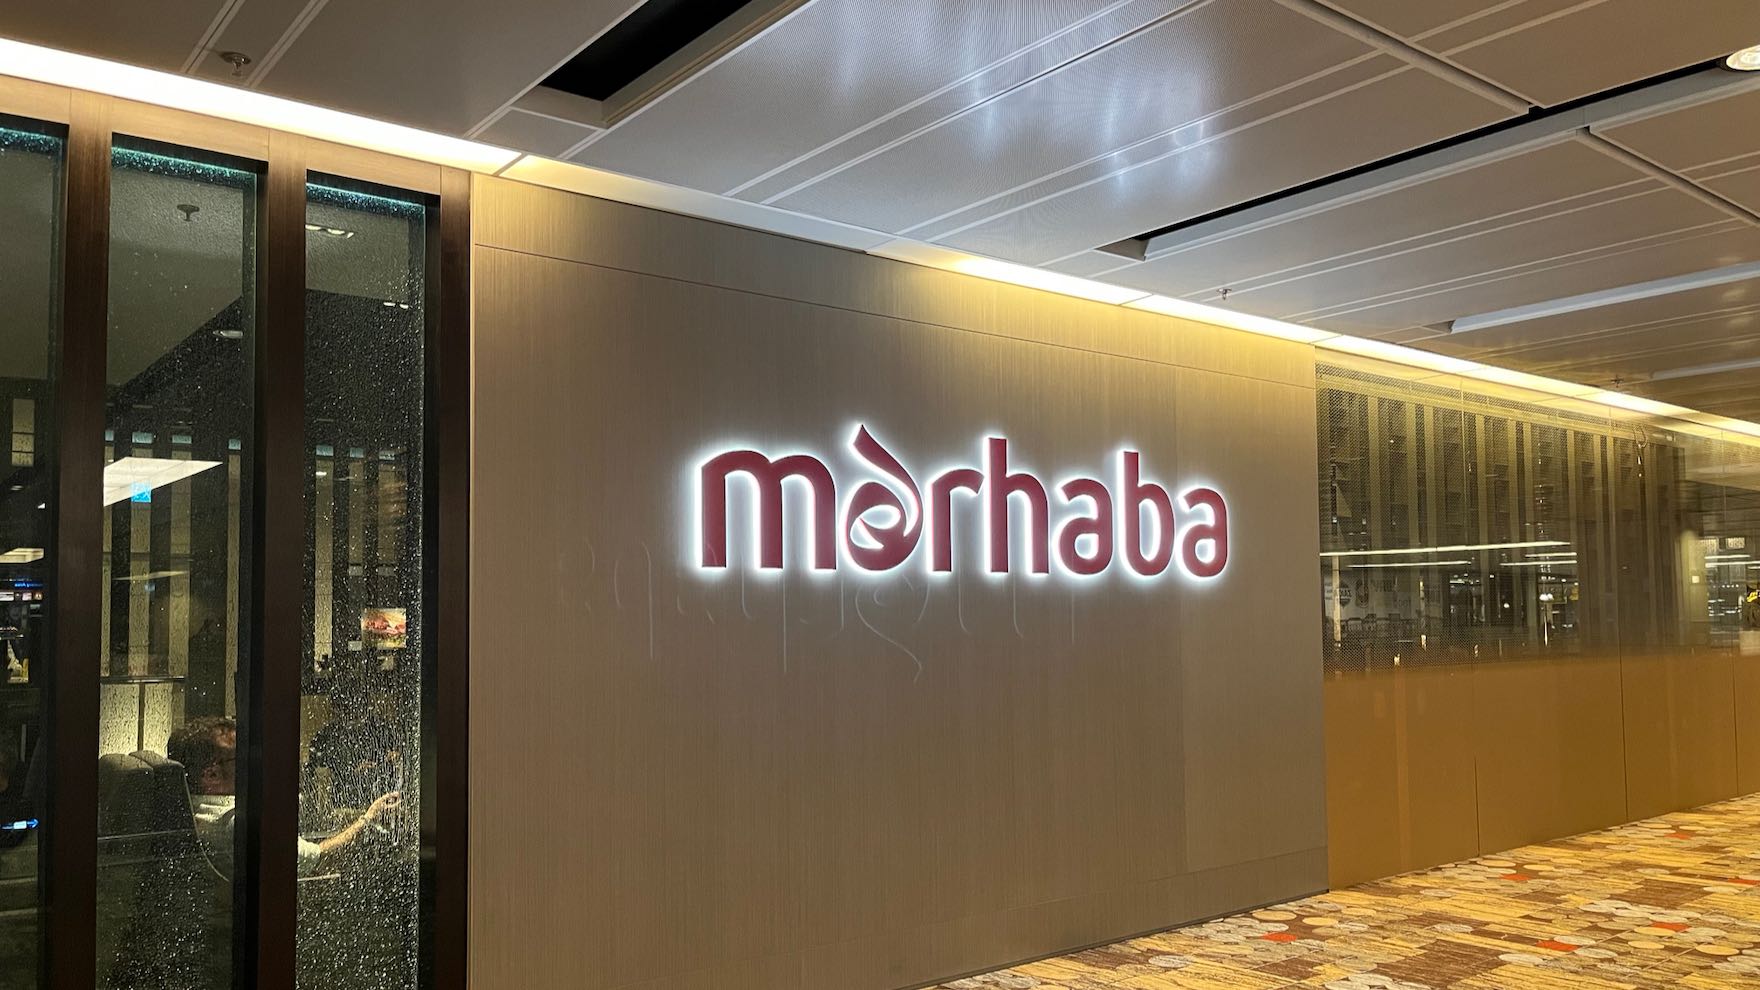 [分享] 新加坡機場 龍騰卡貴賓室 Marhaba Lounge